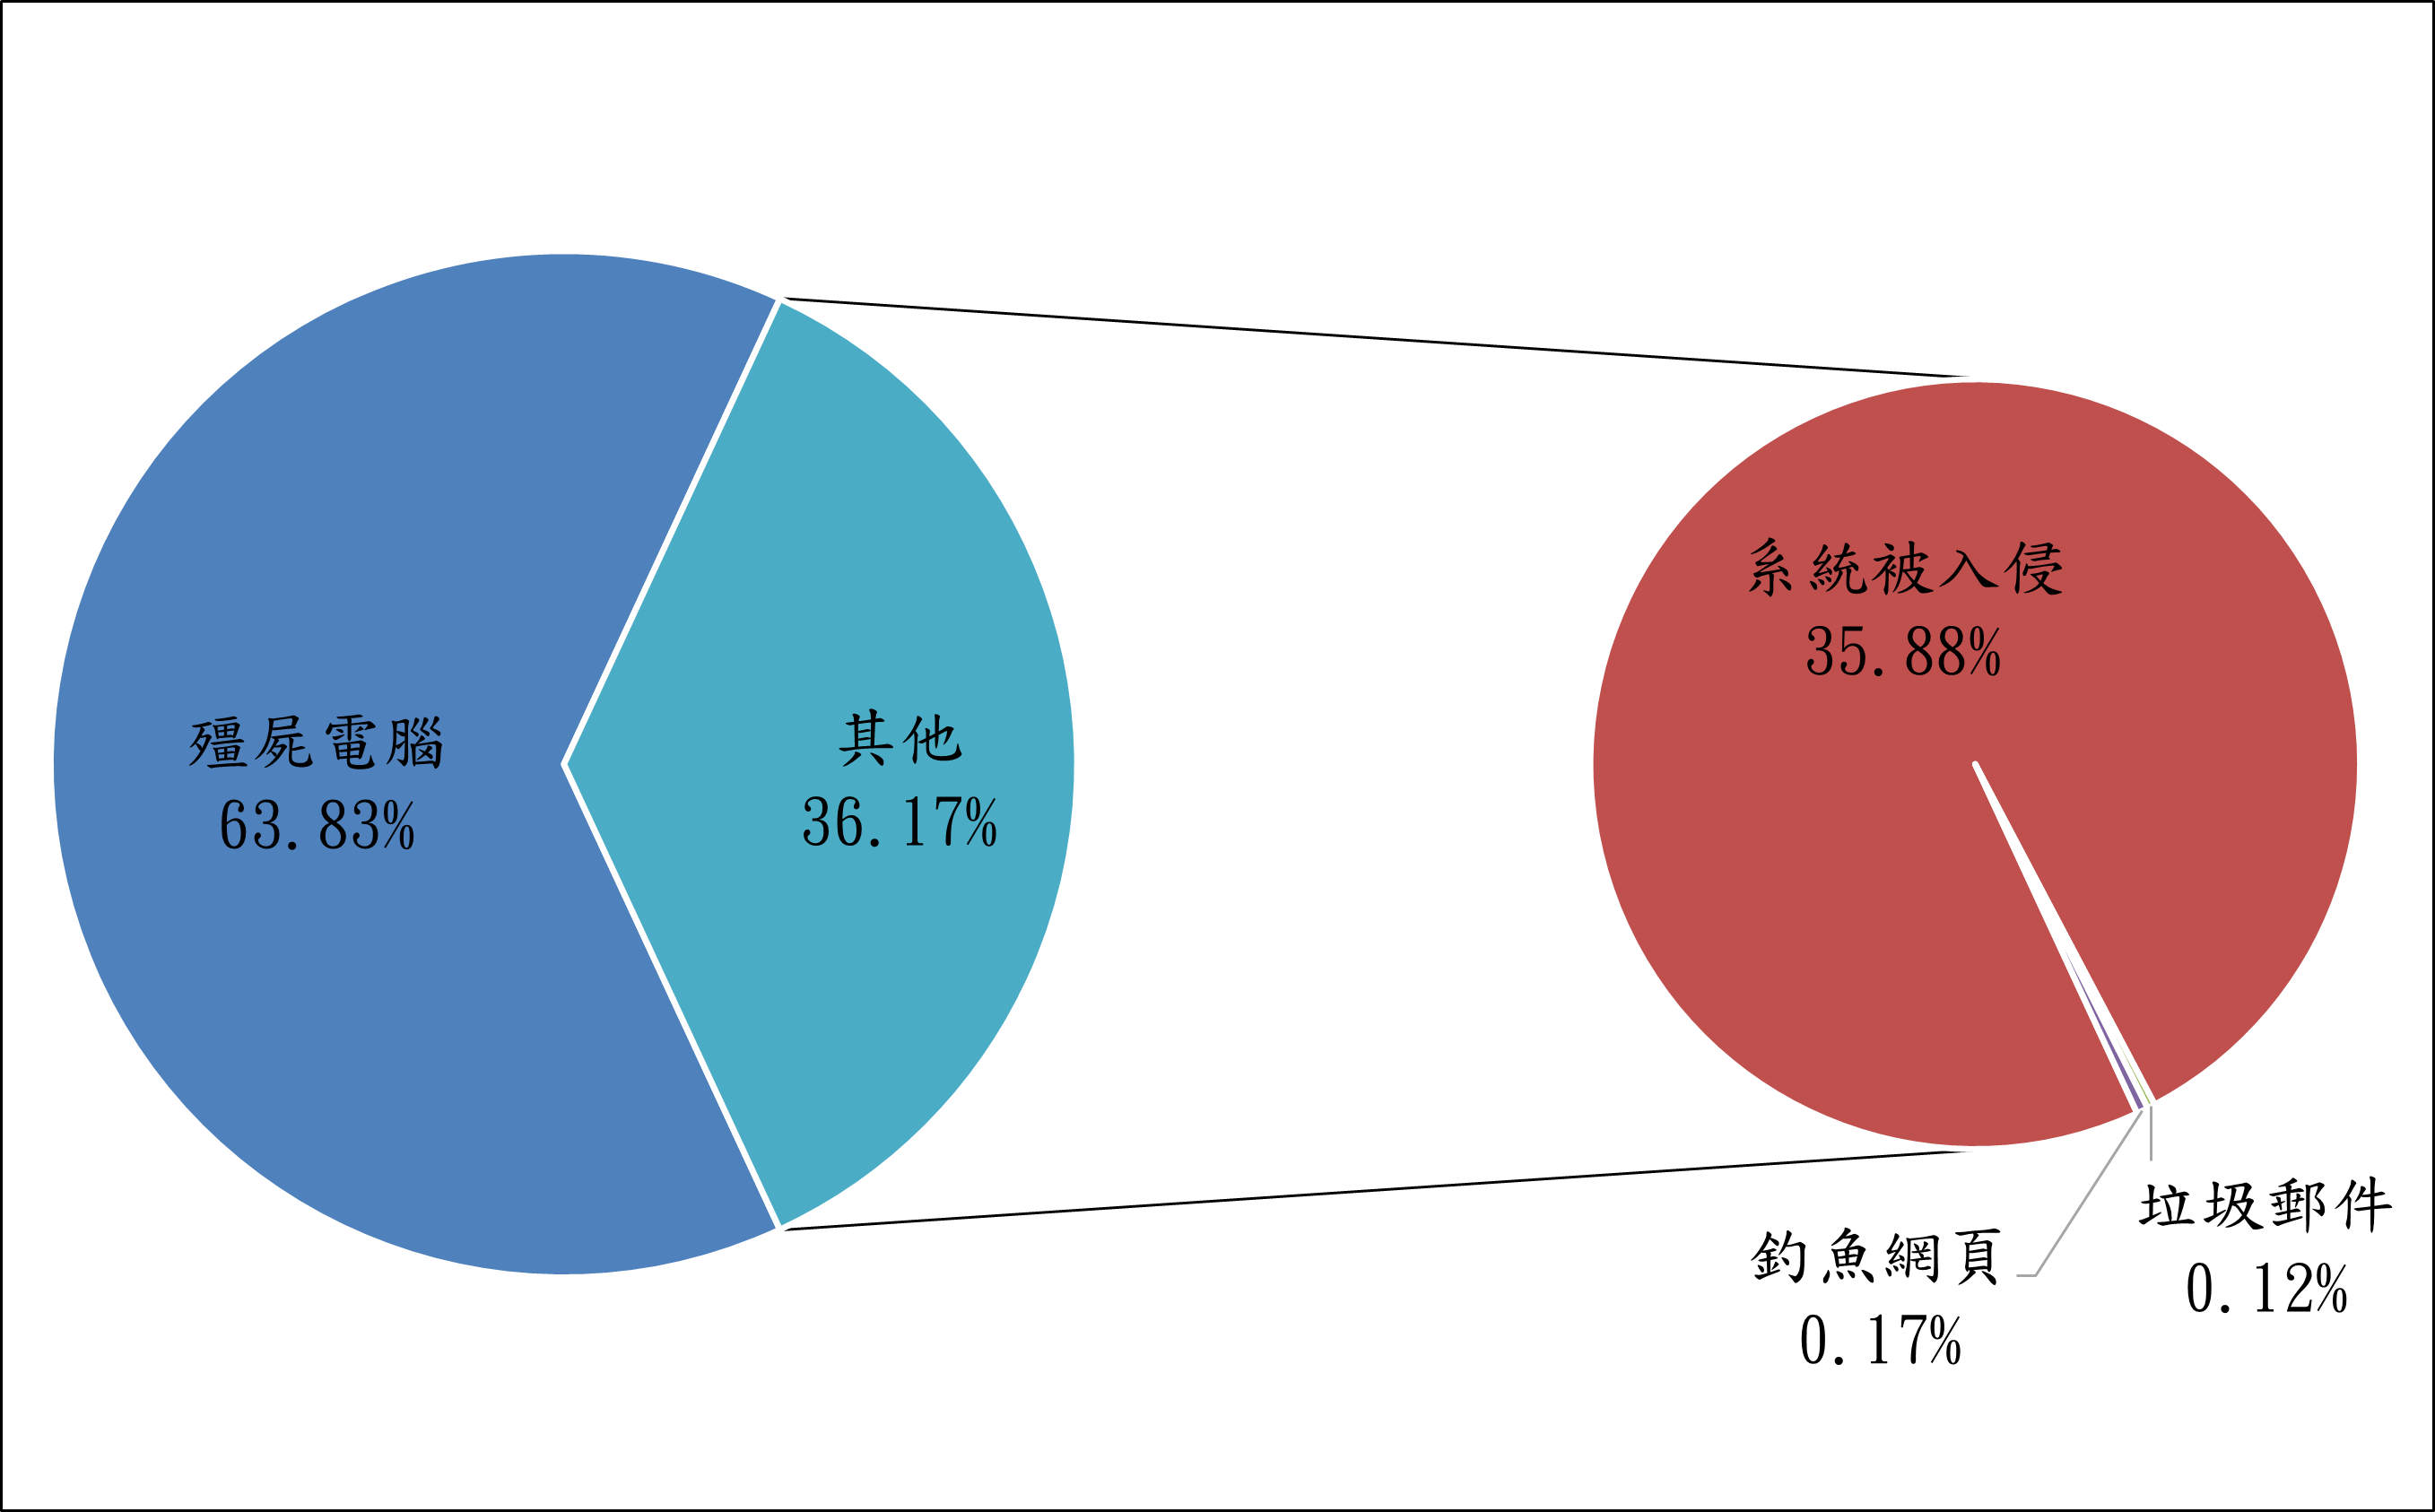 殭屍電腦63.83% 其他36.17% 系統被入侵35.88% 釣魚網頁0.17% 垃圾郵件0.12%